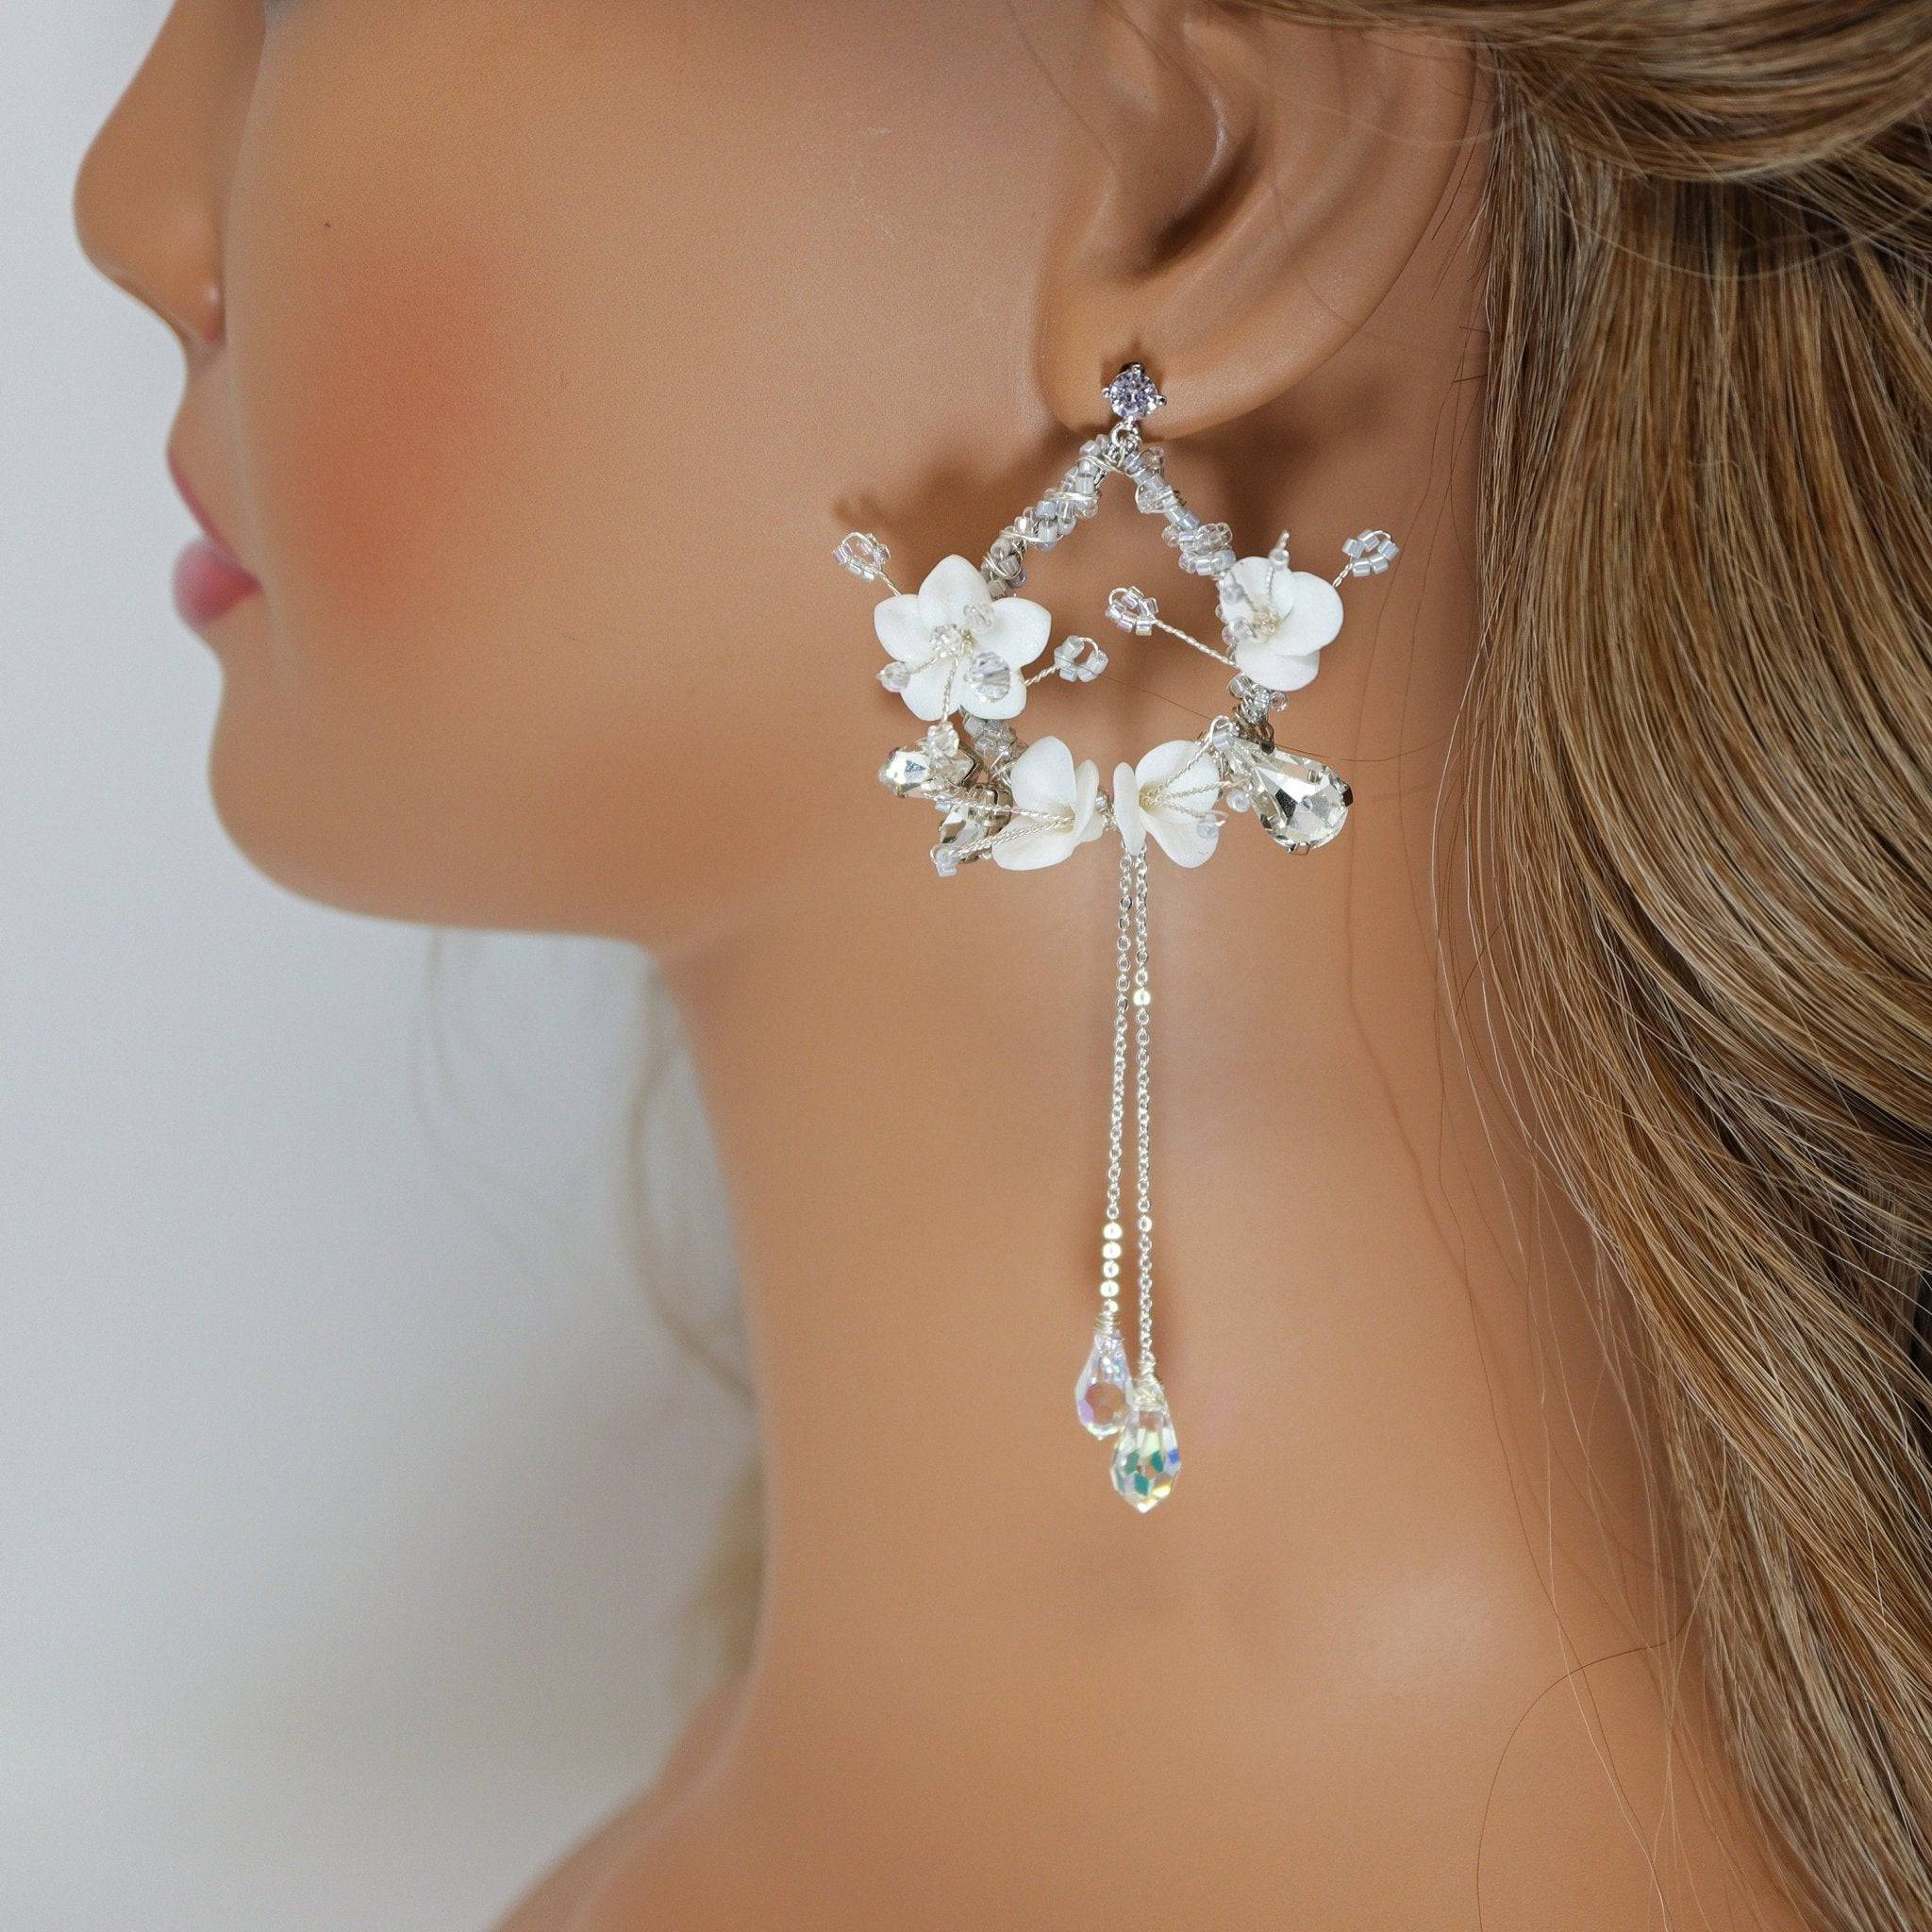 Buy Crystal Earrings Bridal Hoop Earrings Minimalist Wedding Jewelry CZ Hoop  Earrings Bridesmaid Earrings Rae Online in India - Etsy